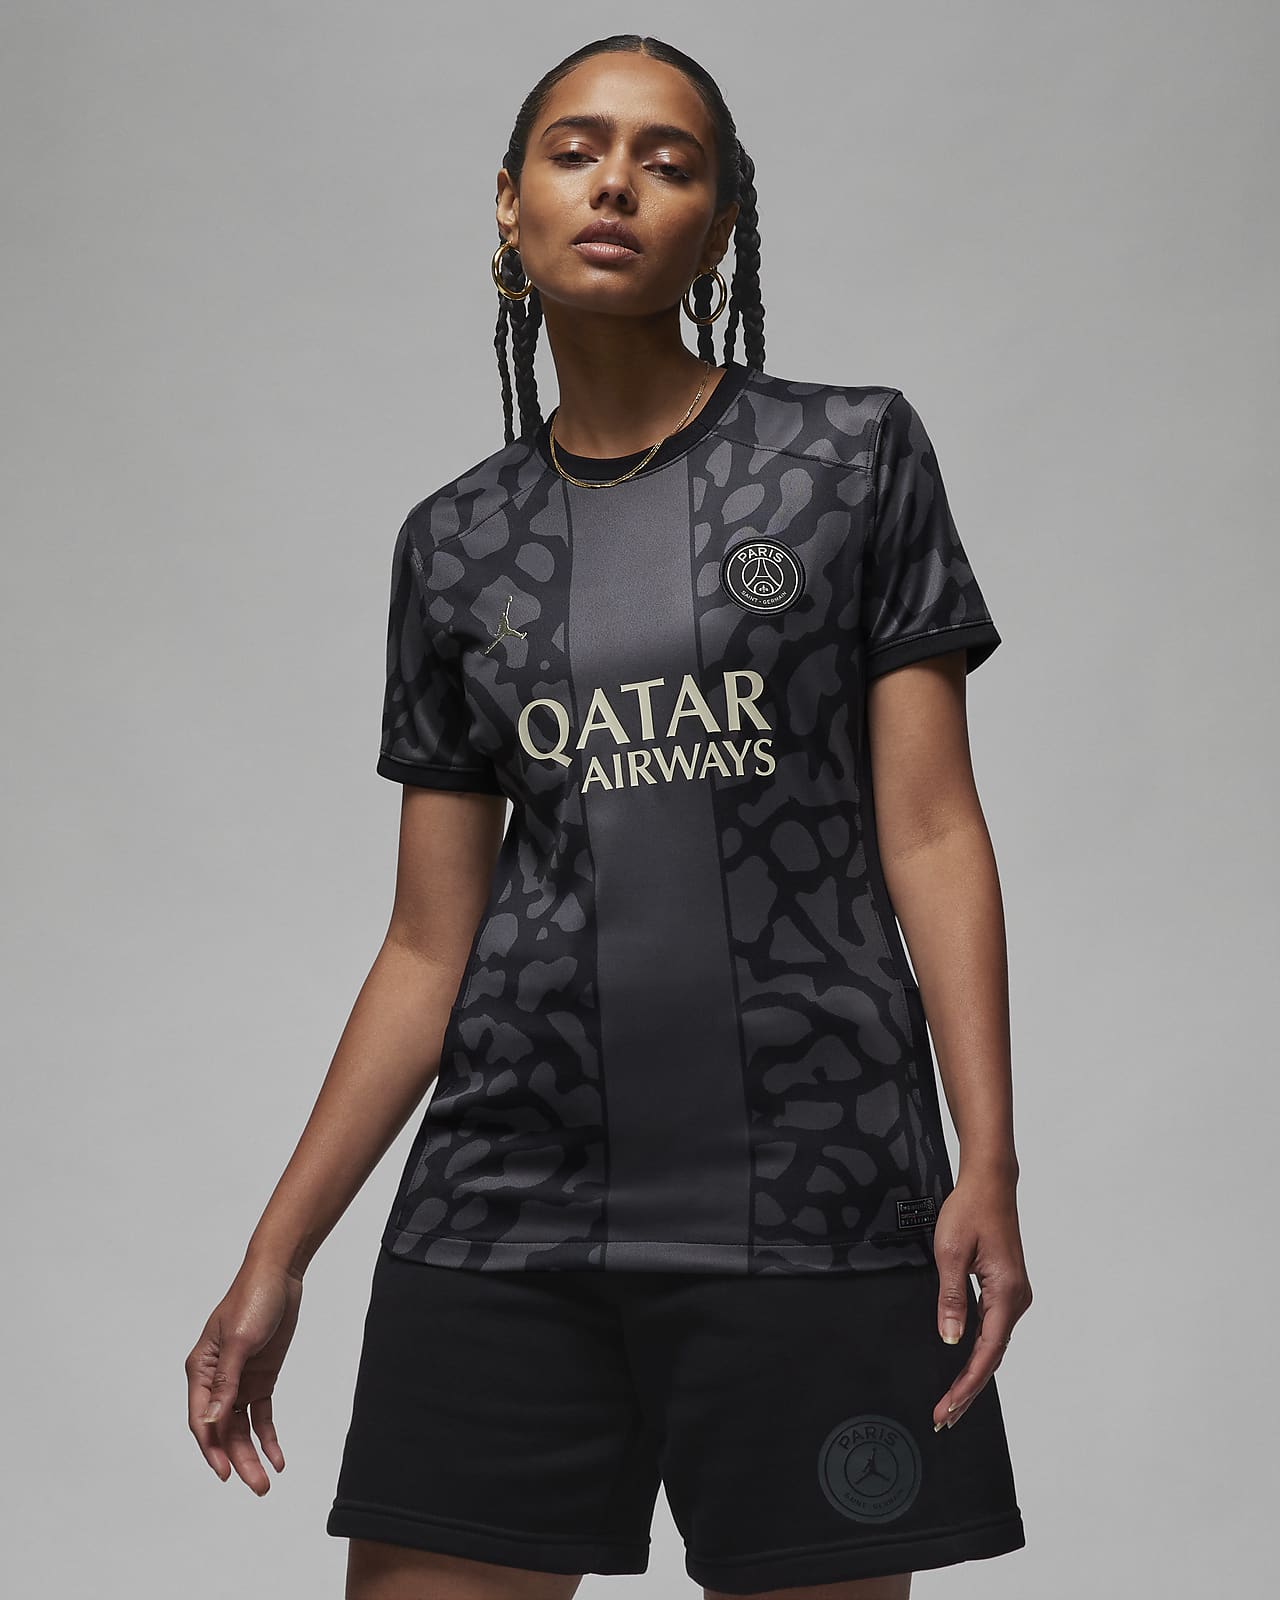 Γυναικεία ποδοσφαιρική φανέλα Jordan Dri-FIT εναλλακτικής εμφάνισης Παρί Σεν Ζερμέν 2023/24 Stadium